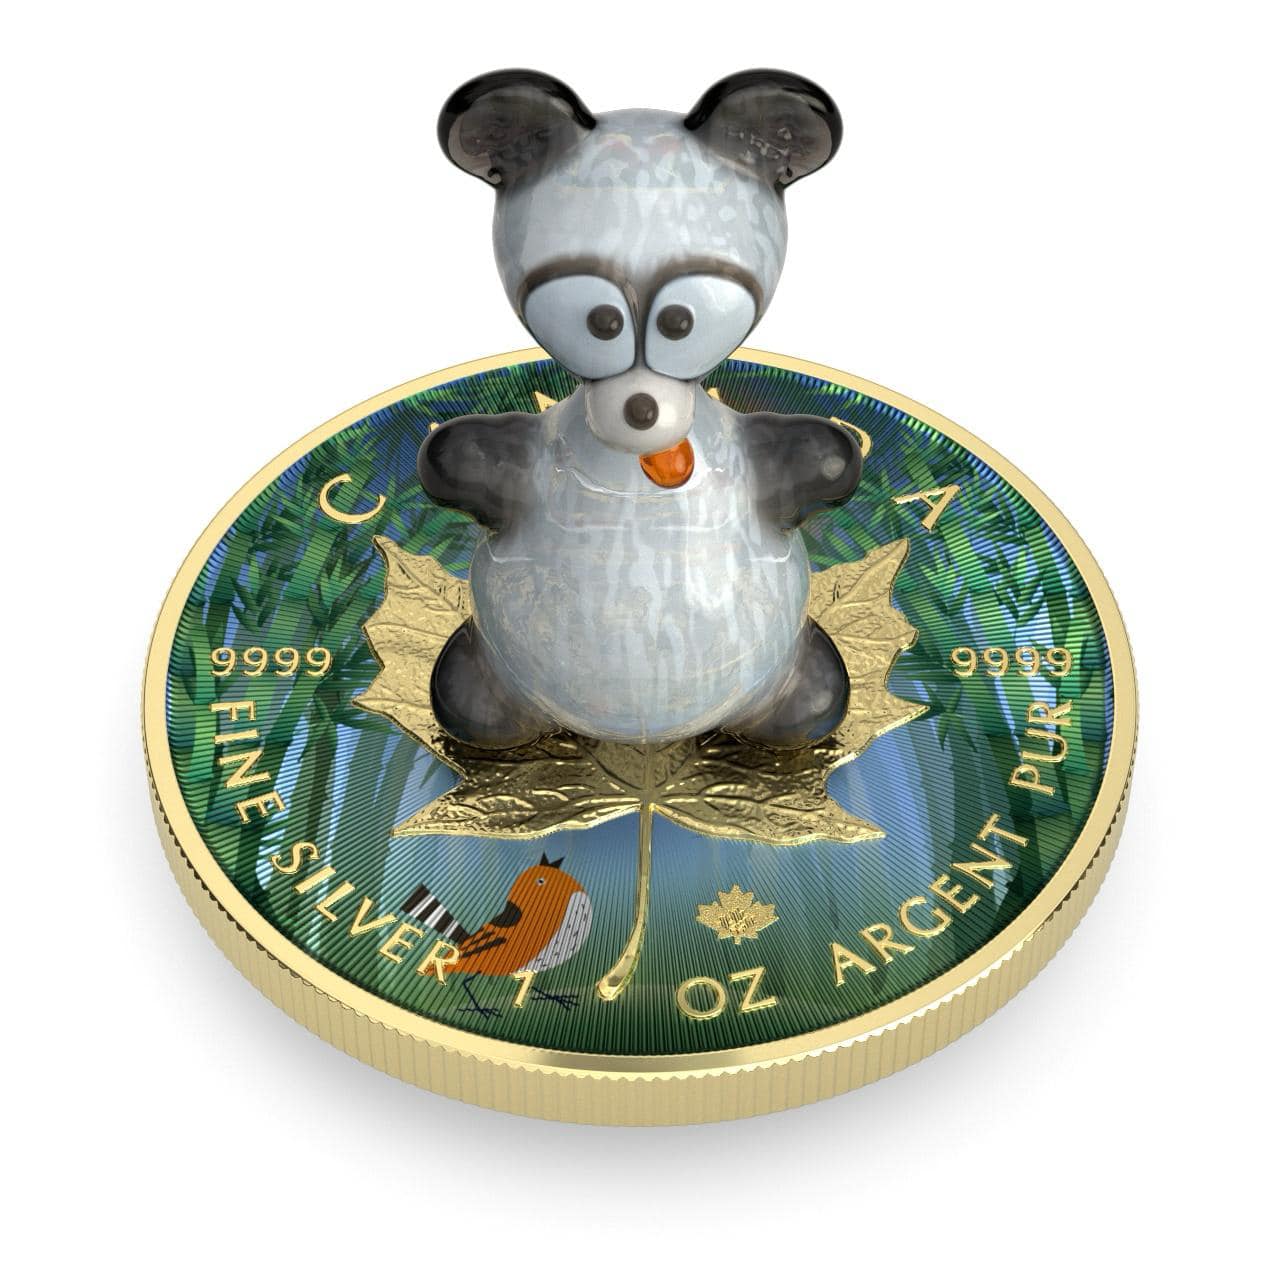 2022 5USD Murano 1oz Silver Coin Panda Captain’s Chest Bullion